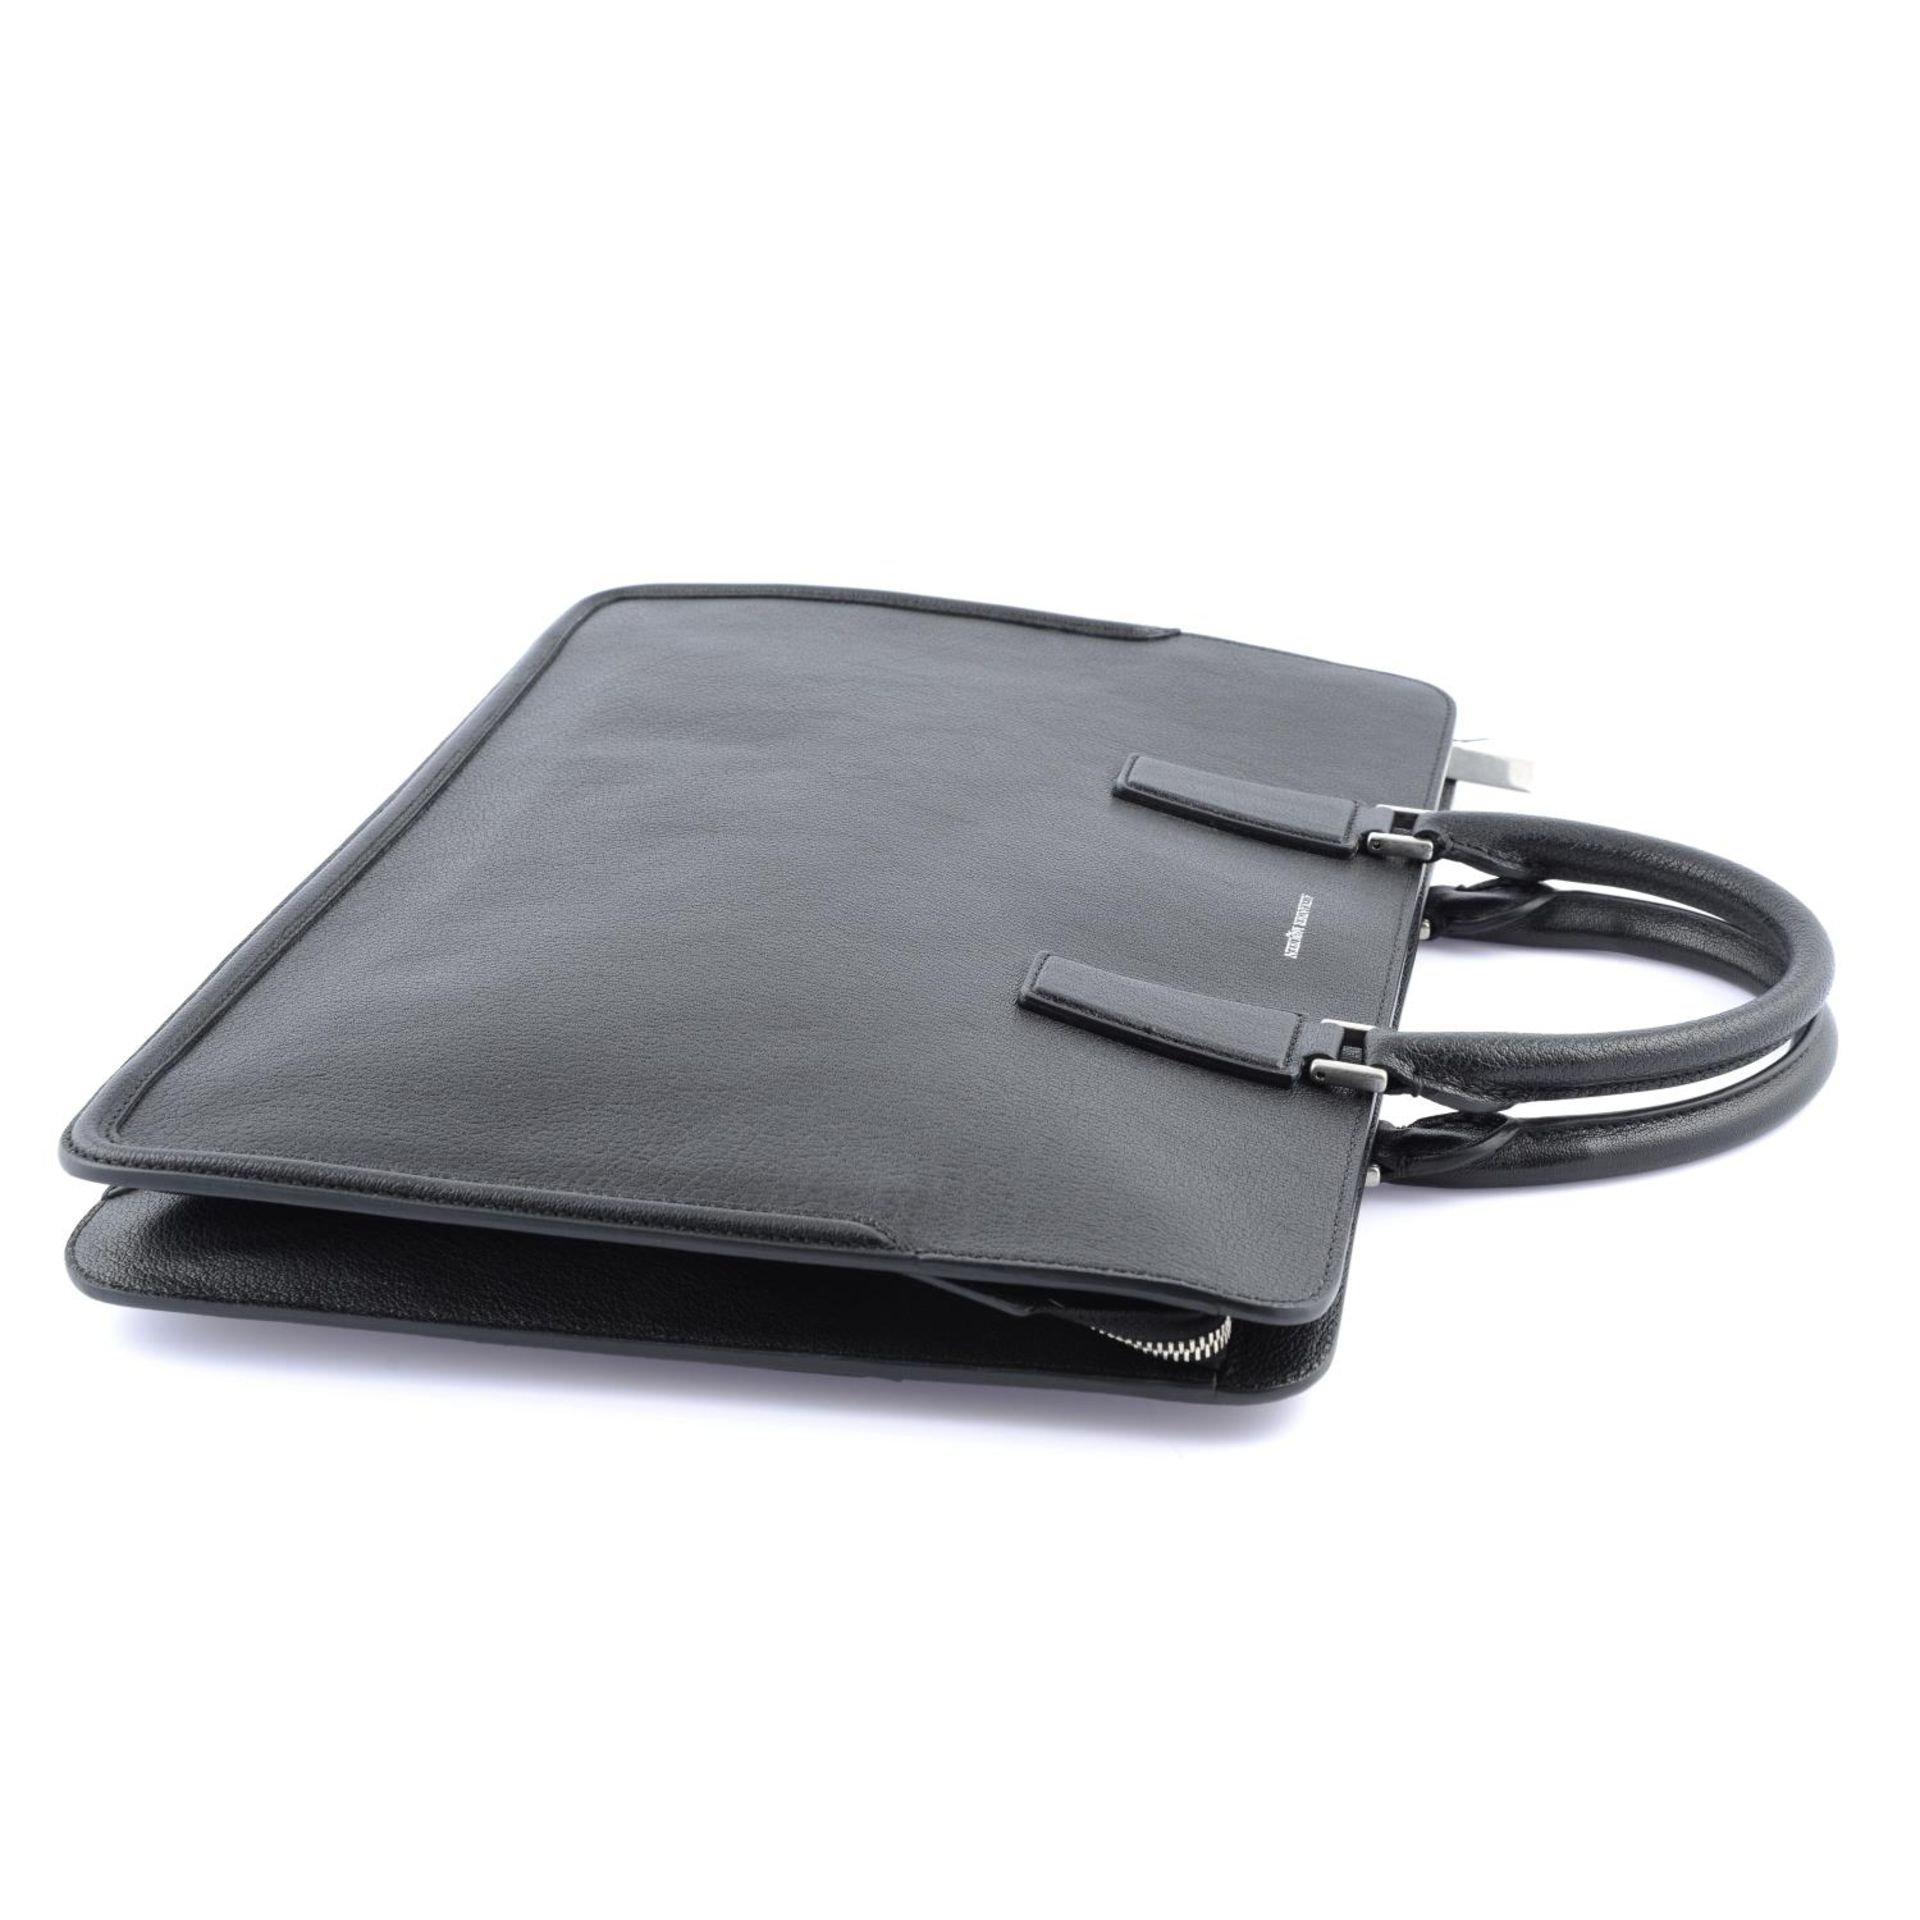 ALEXANDER MCQUEEN - a black leather briefcase. - Bild 3 aus 4